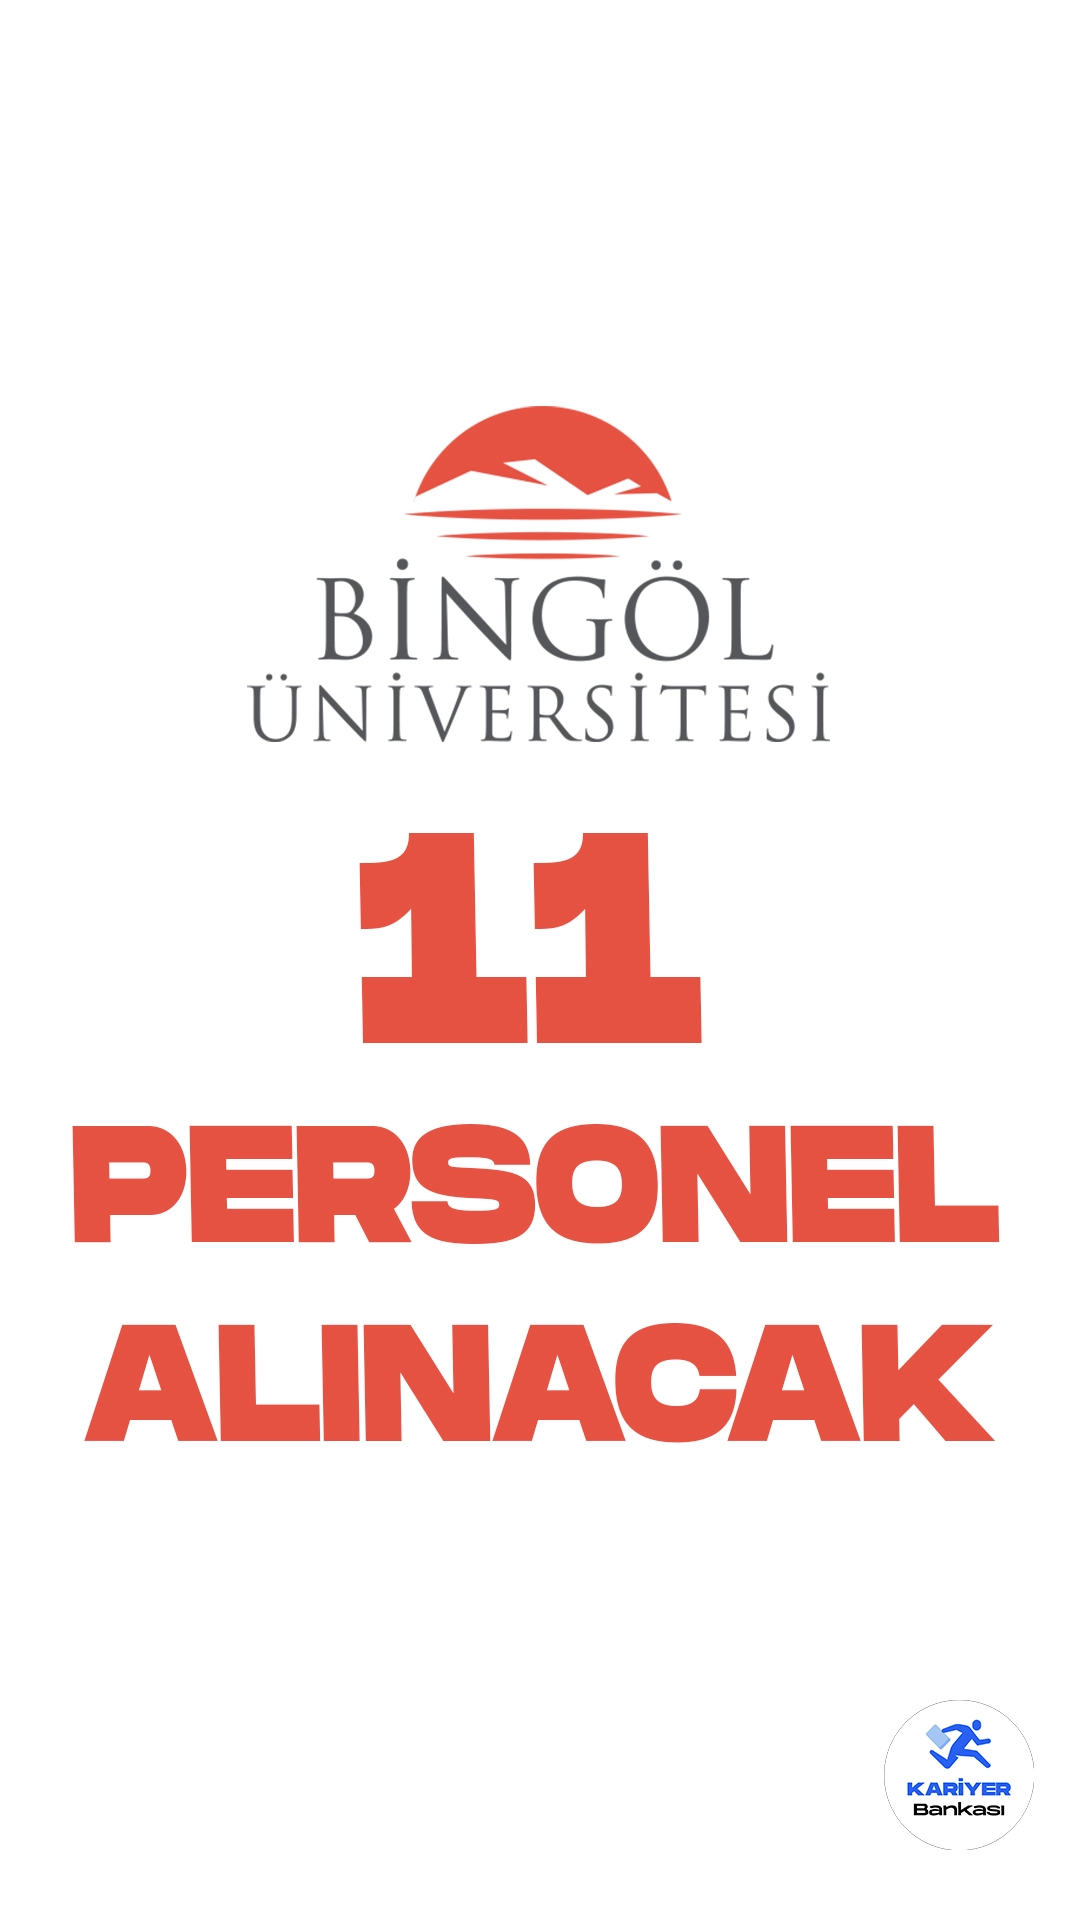 Bingöl Üniversitesi personel alımı duyurusu yayımlandı. İlgili alım duyurusuna göre, Bingöl Üniversitesine destek personeli, koruma ve güvenlik görevlisi, büro personeli ve mühendis ünvanlarında 11 sözleşmeli personel alımı yapılacak. Başvurular 11 Eylül itibarıyla alınacak. Başvuru yapacak adayların şartları sağlaması gerekmektedir.